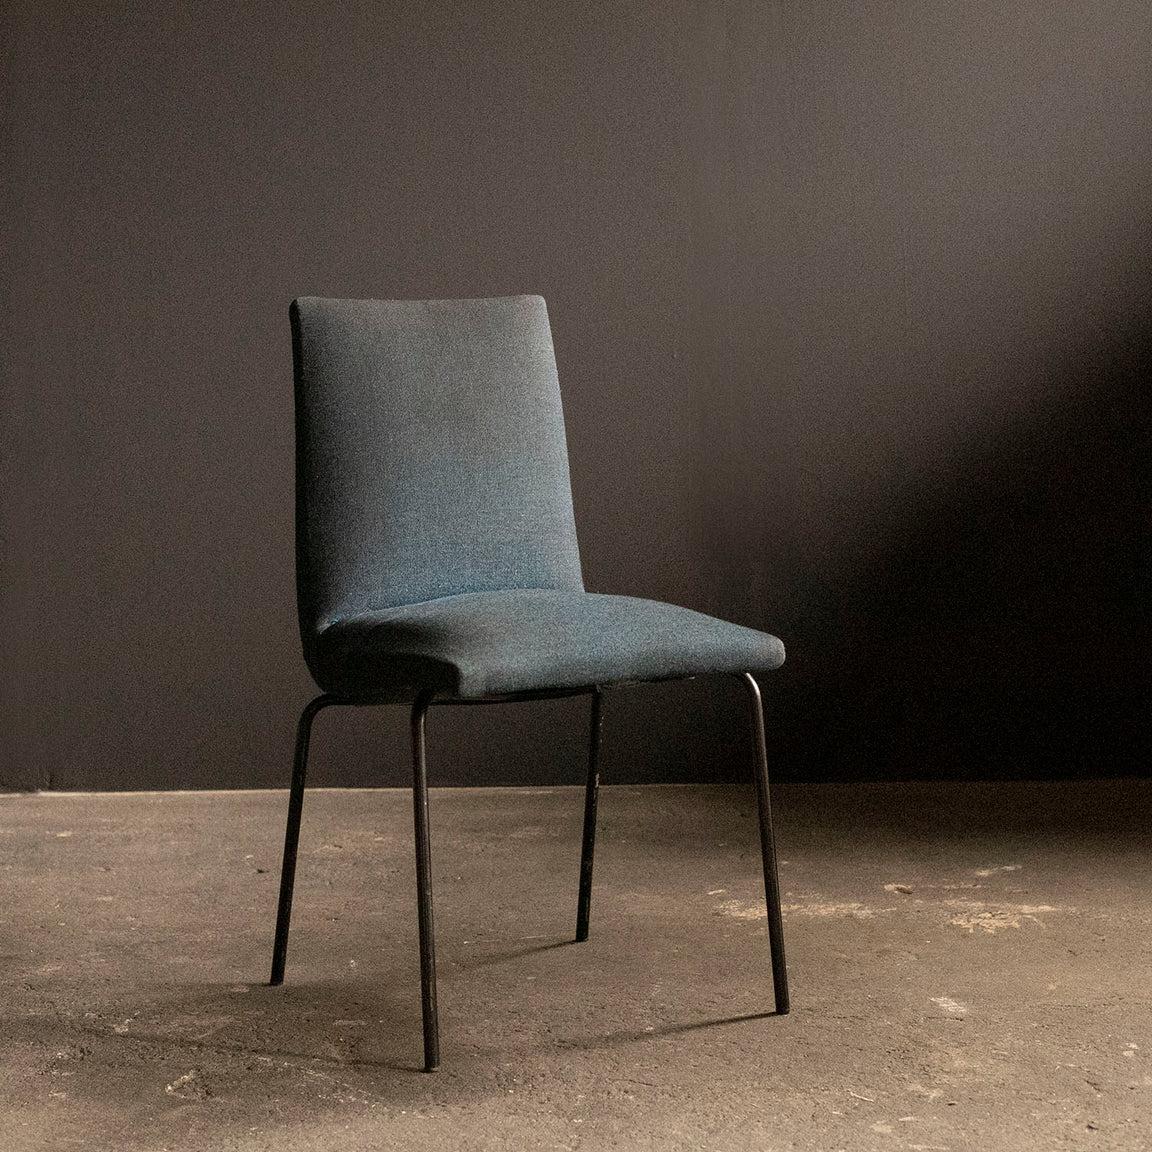 Chaises de salle à manger du milieu du siècle conçues par le designer français Pierre Guariche pour le fabricant de meubles belge Meurop dans les années 1960.
Tapis et pieds en métal peint en noir.
La tapisserie est d'origine.
Excellent état vintage